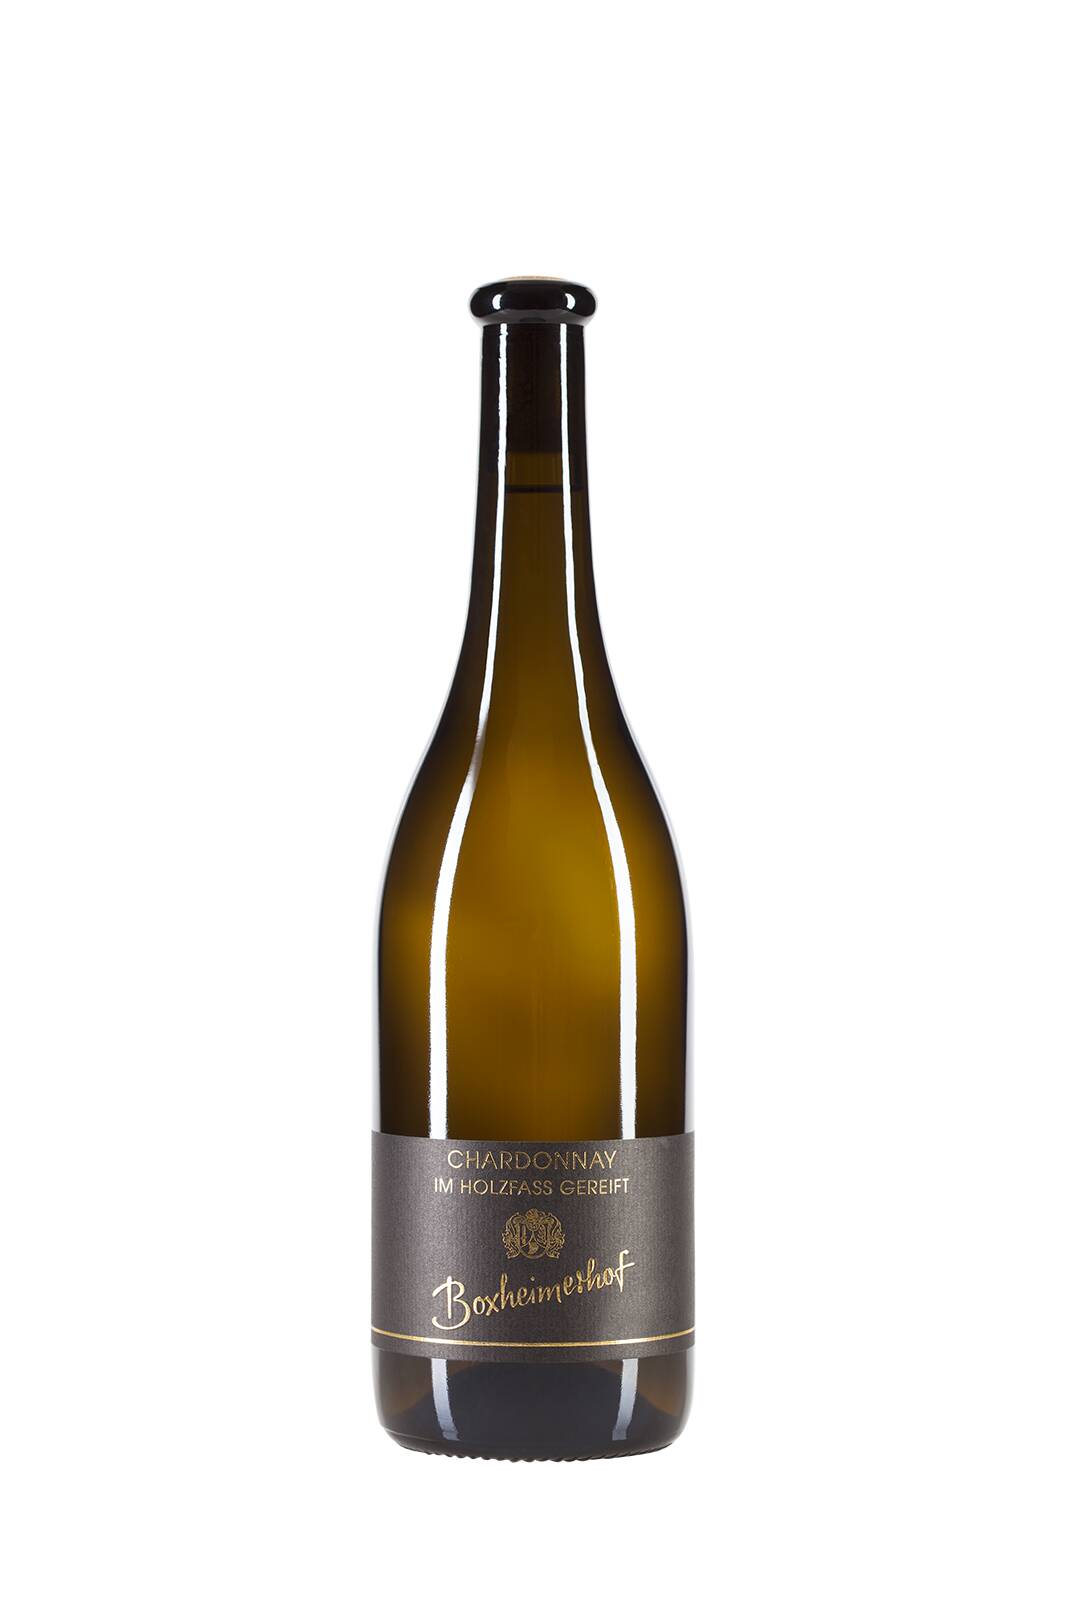 2019er Abenheimer Klausenberg Chardonnay im Eichenfaß gereift